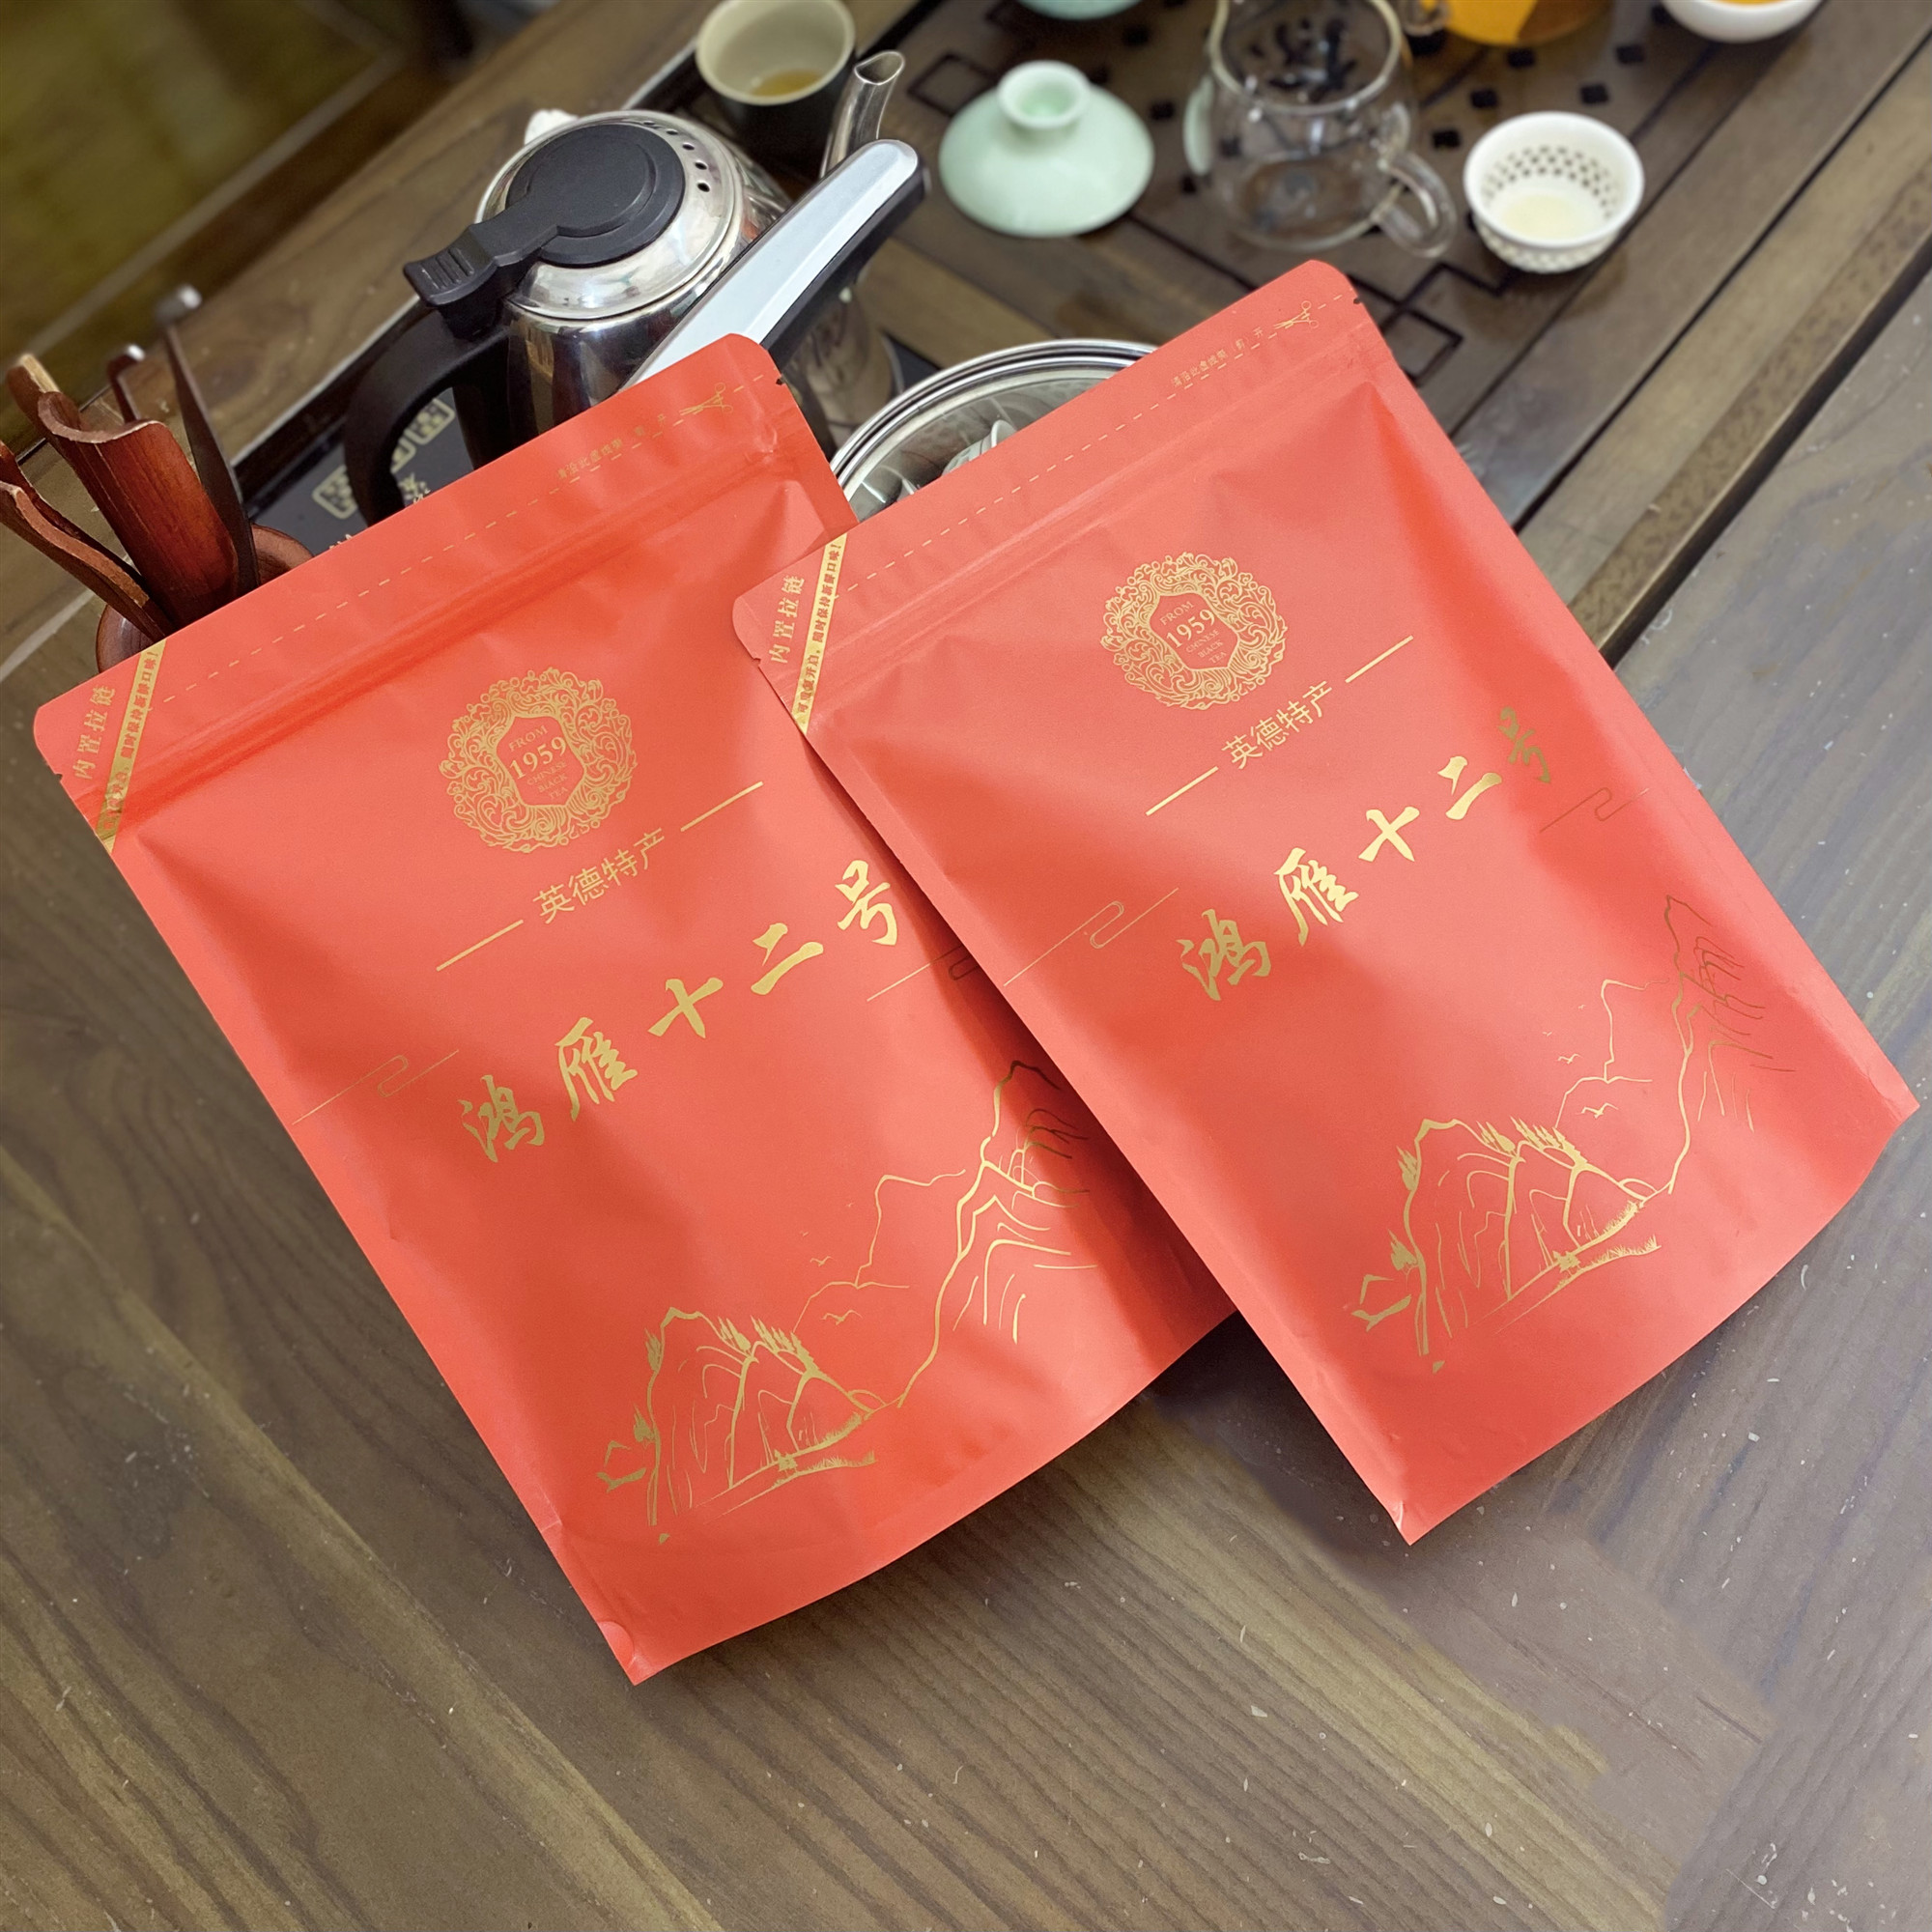 鸿雁十二号春季红茶浓香型散装茶叶500g花果香红茶工夫茶英德红茶